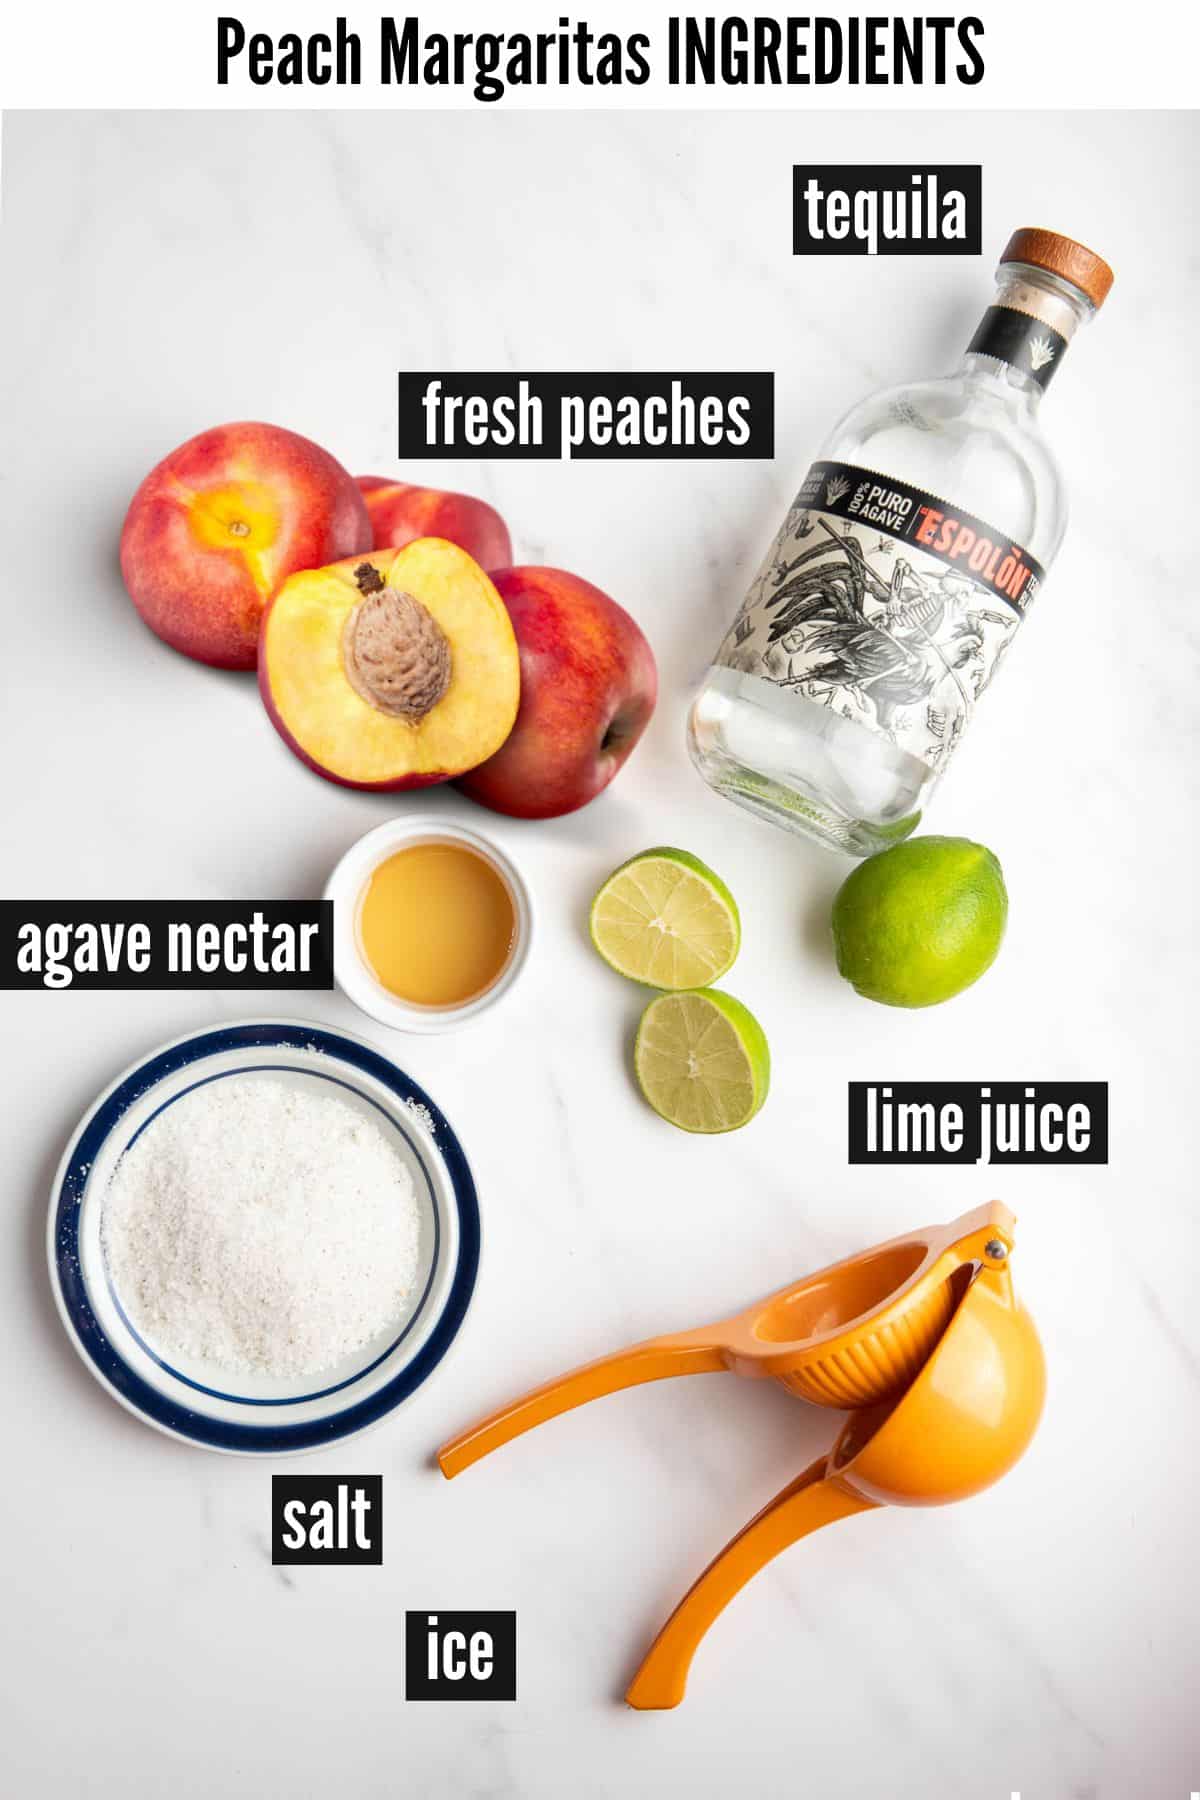 peach margaritas labelled ingredients.